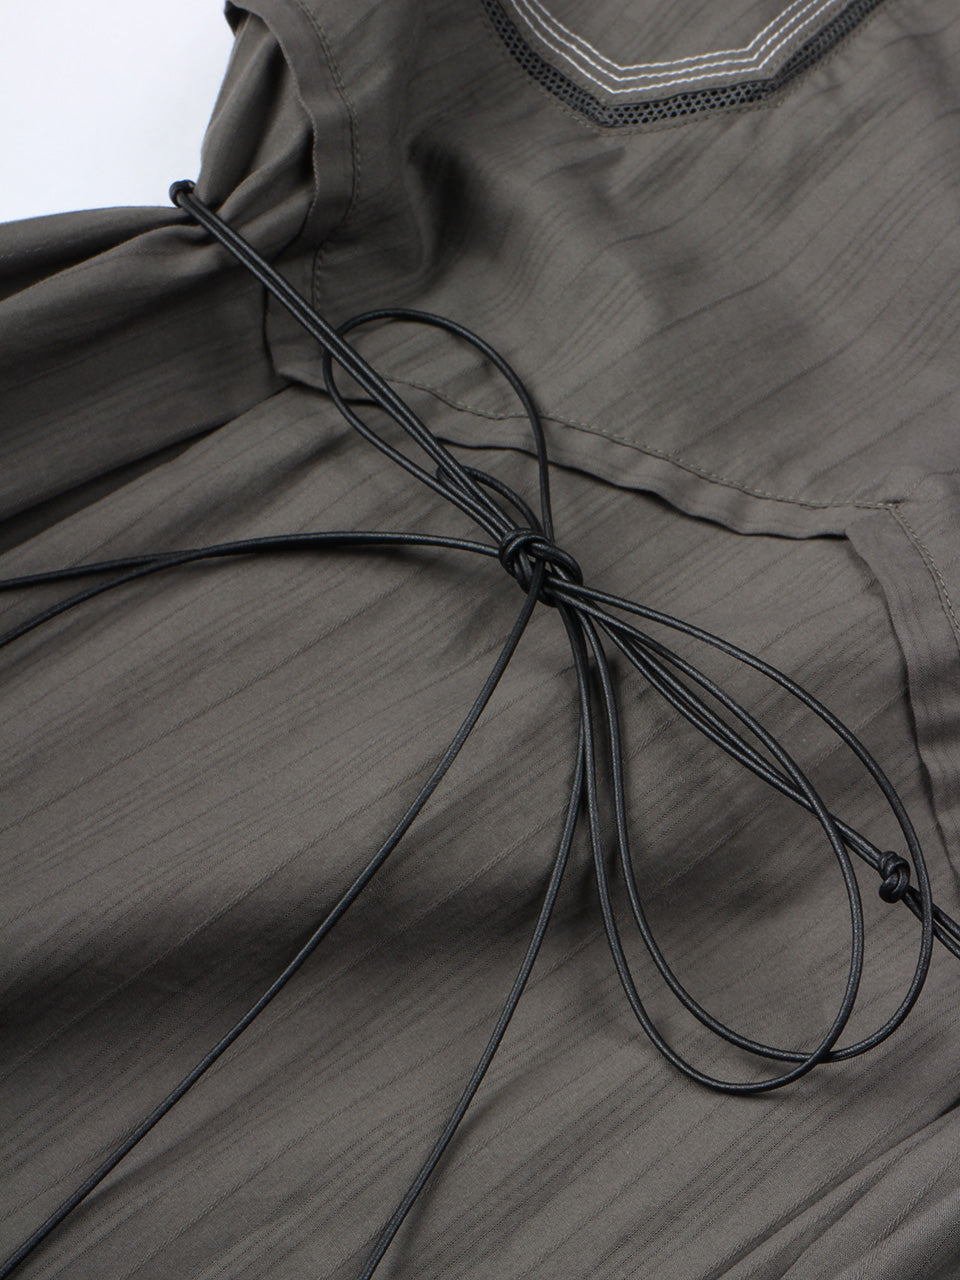 Dobby Stripe Cloth Dress charcoal grey